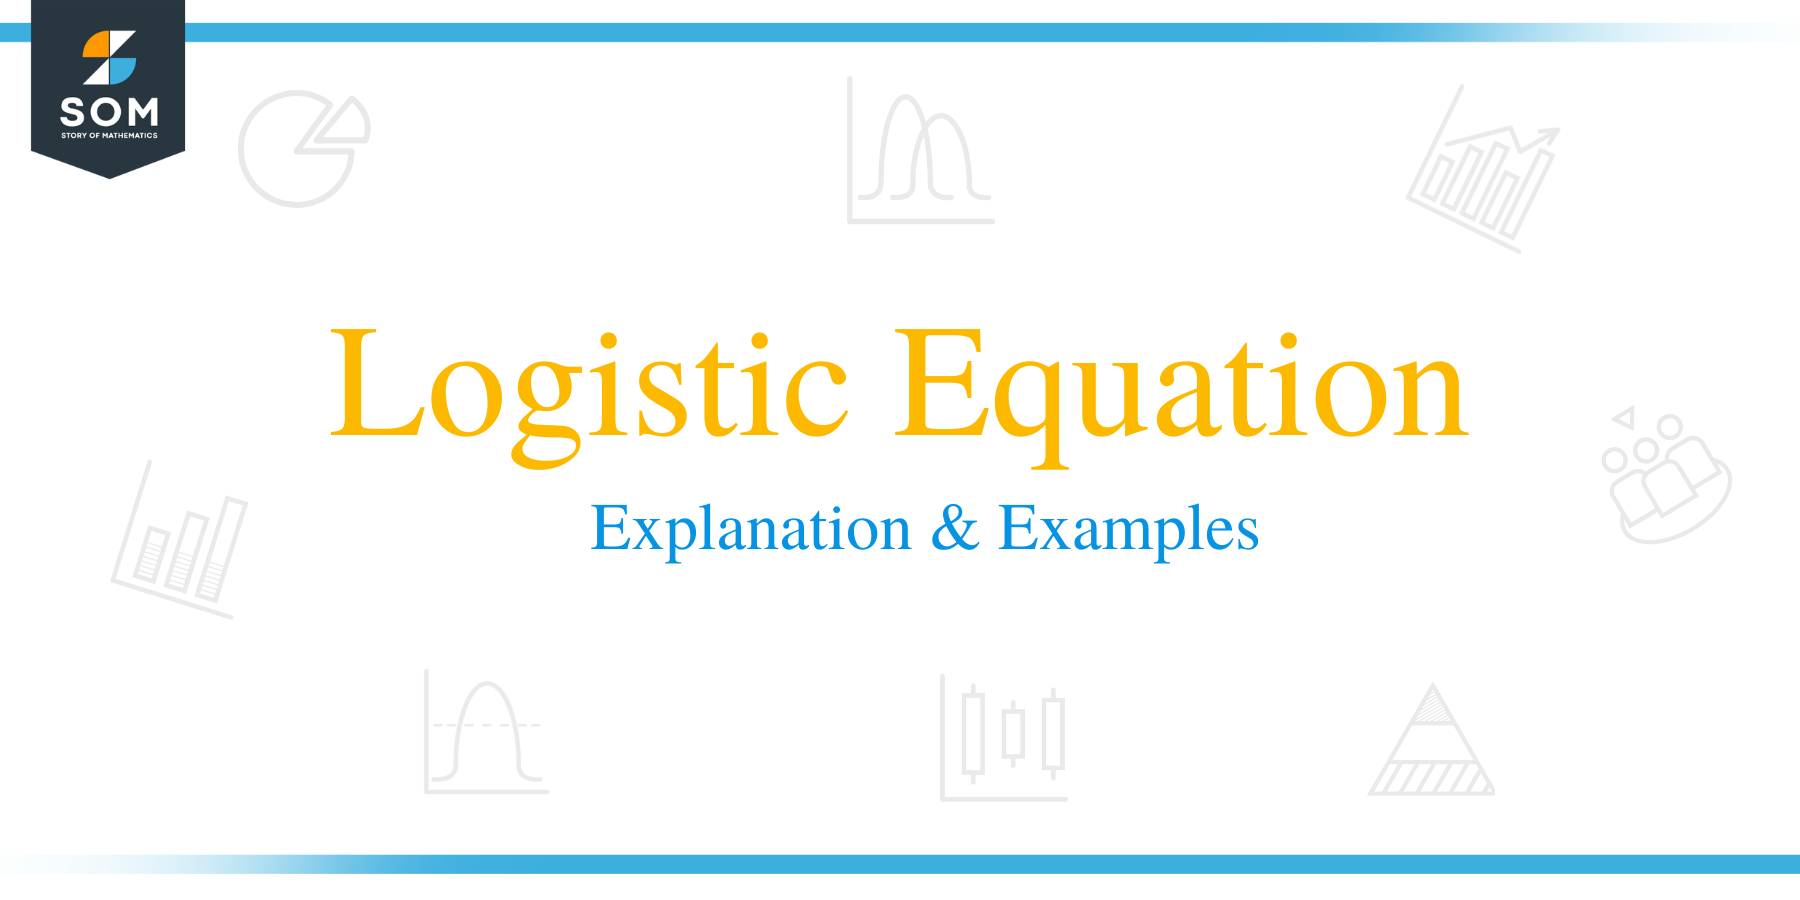 Logistic Equation